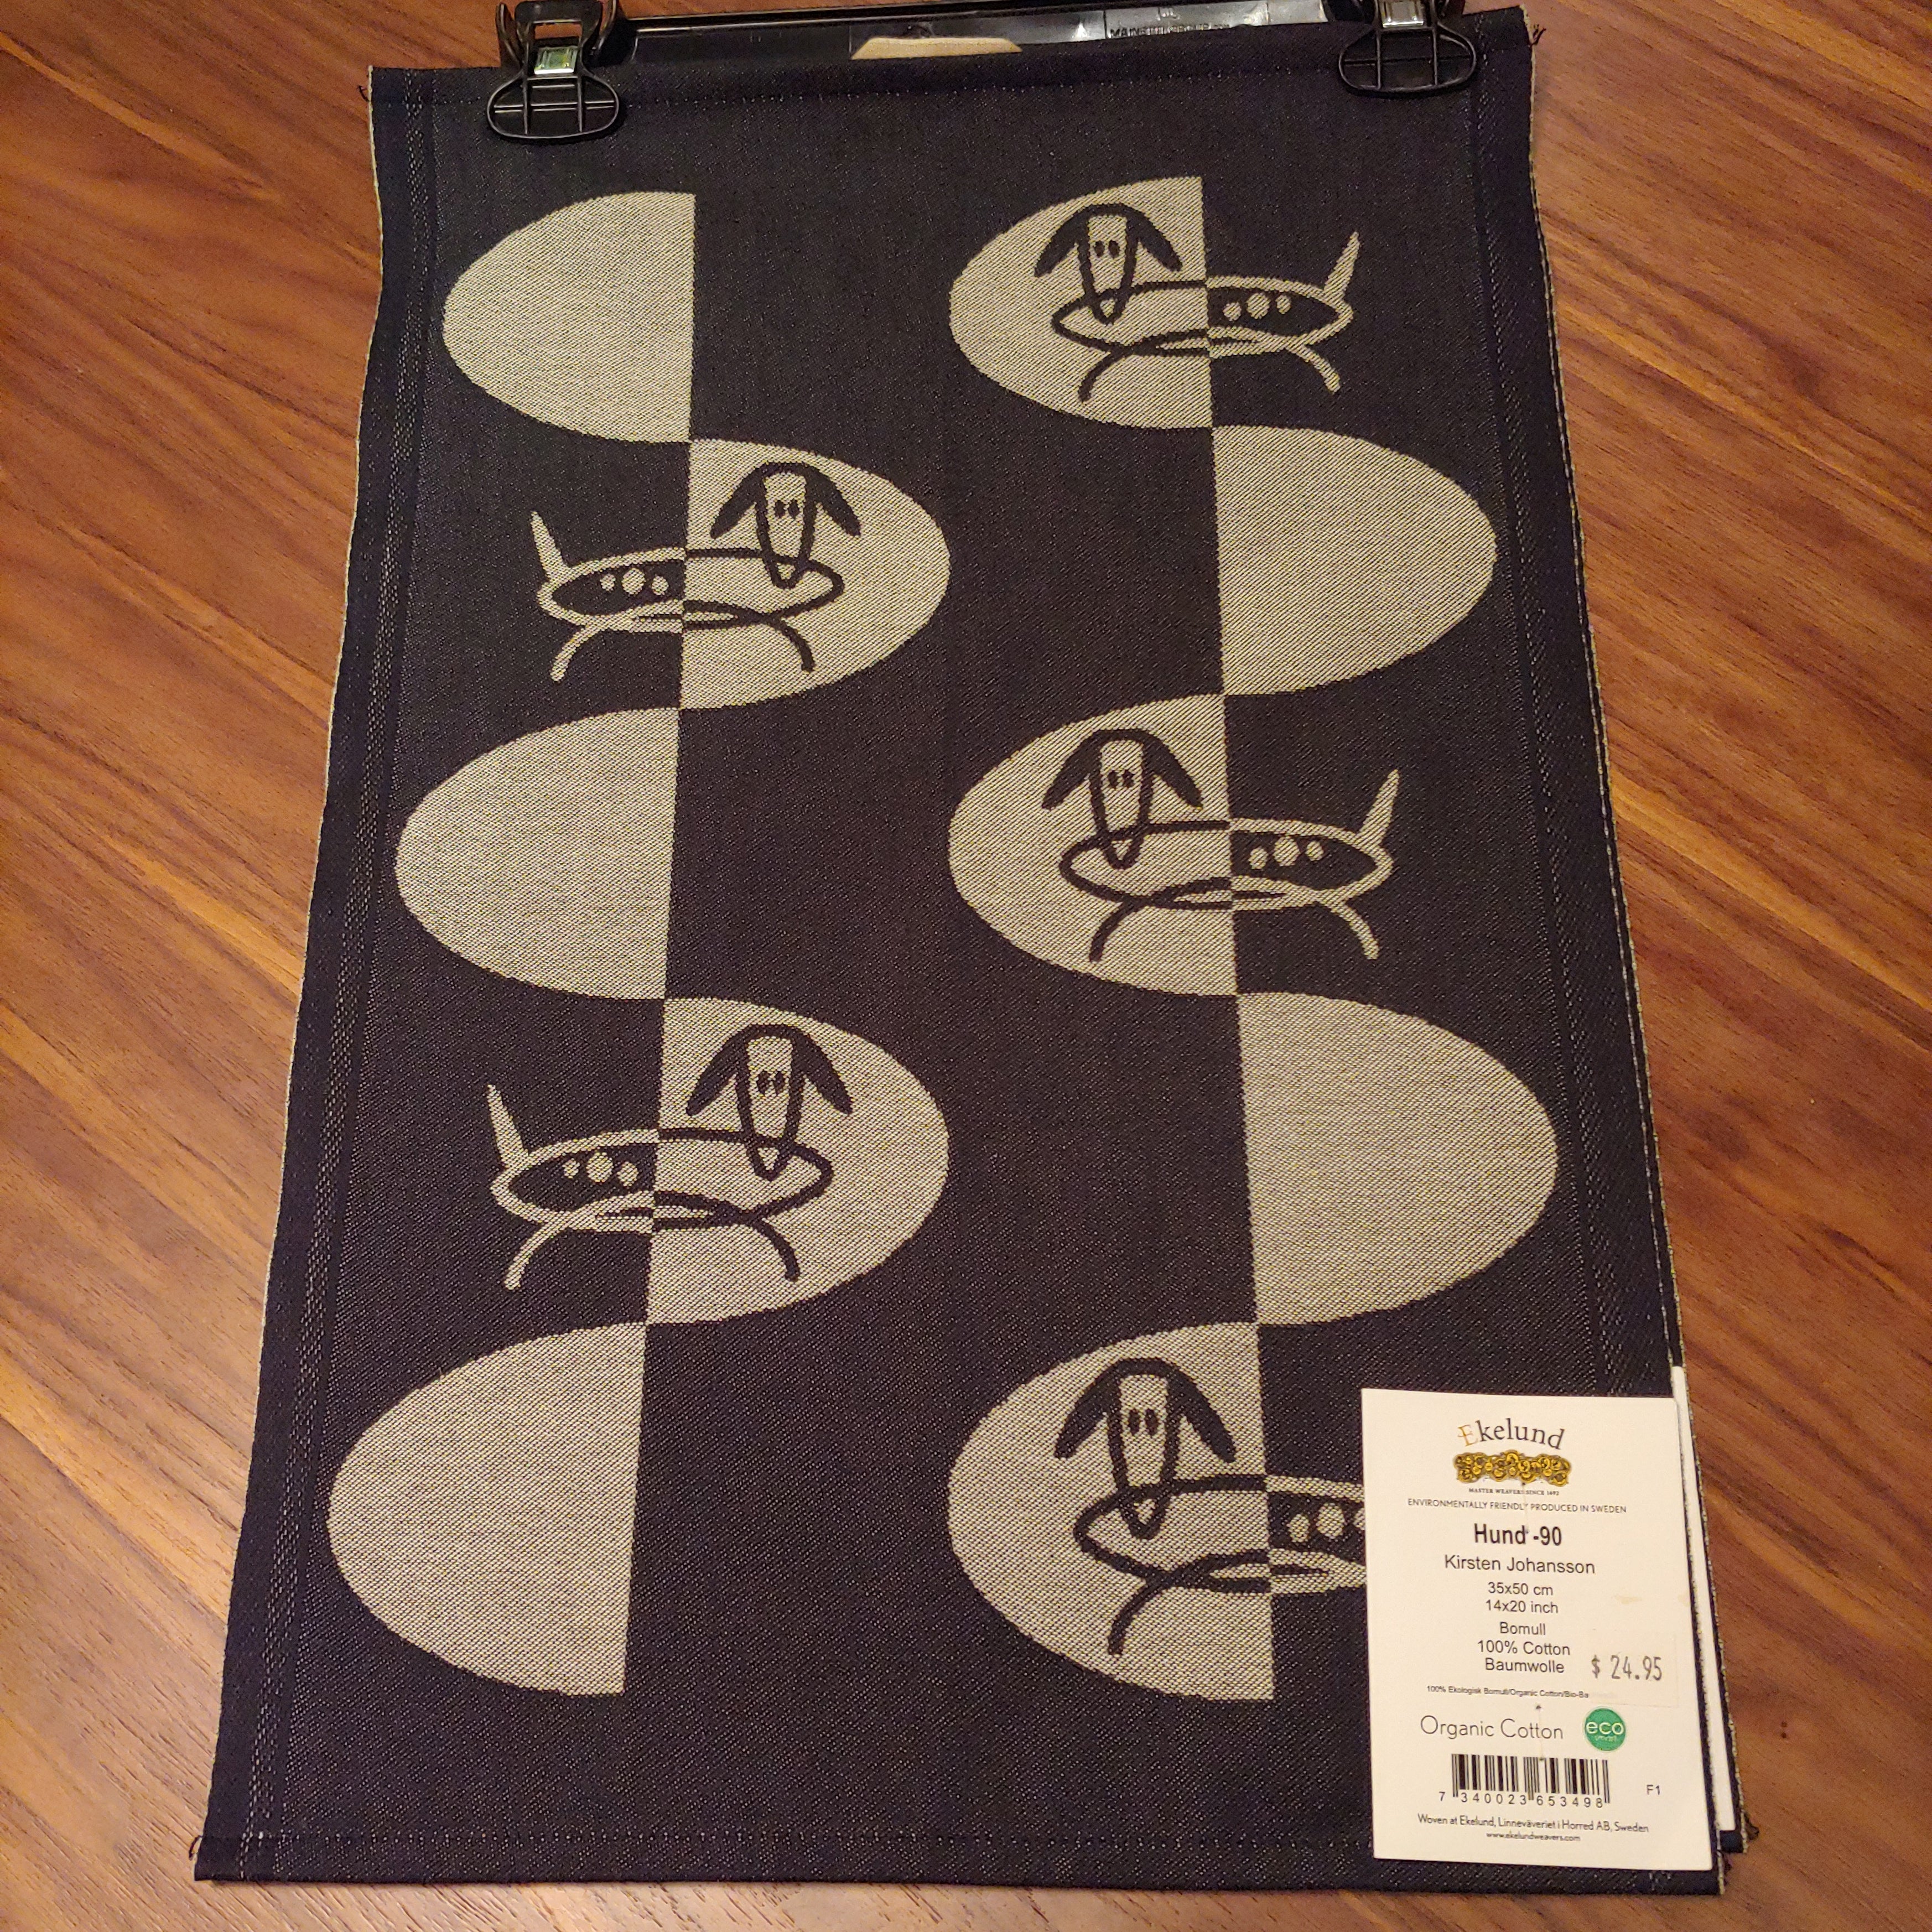 SALE Tea towel 35x50 cm dogs Hund-90